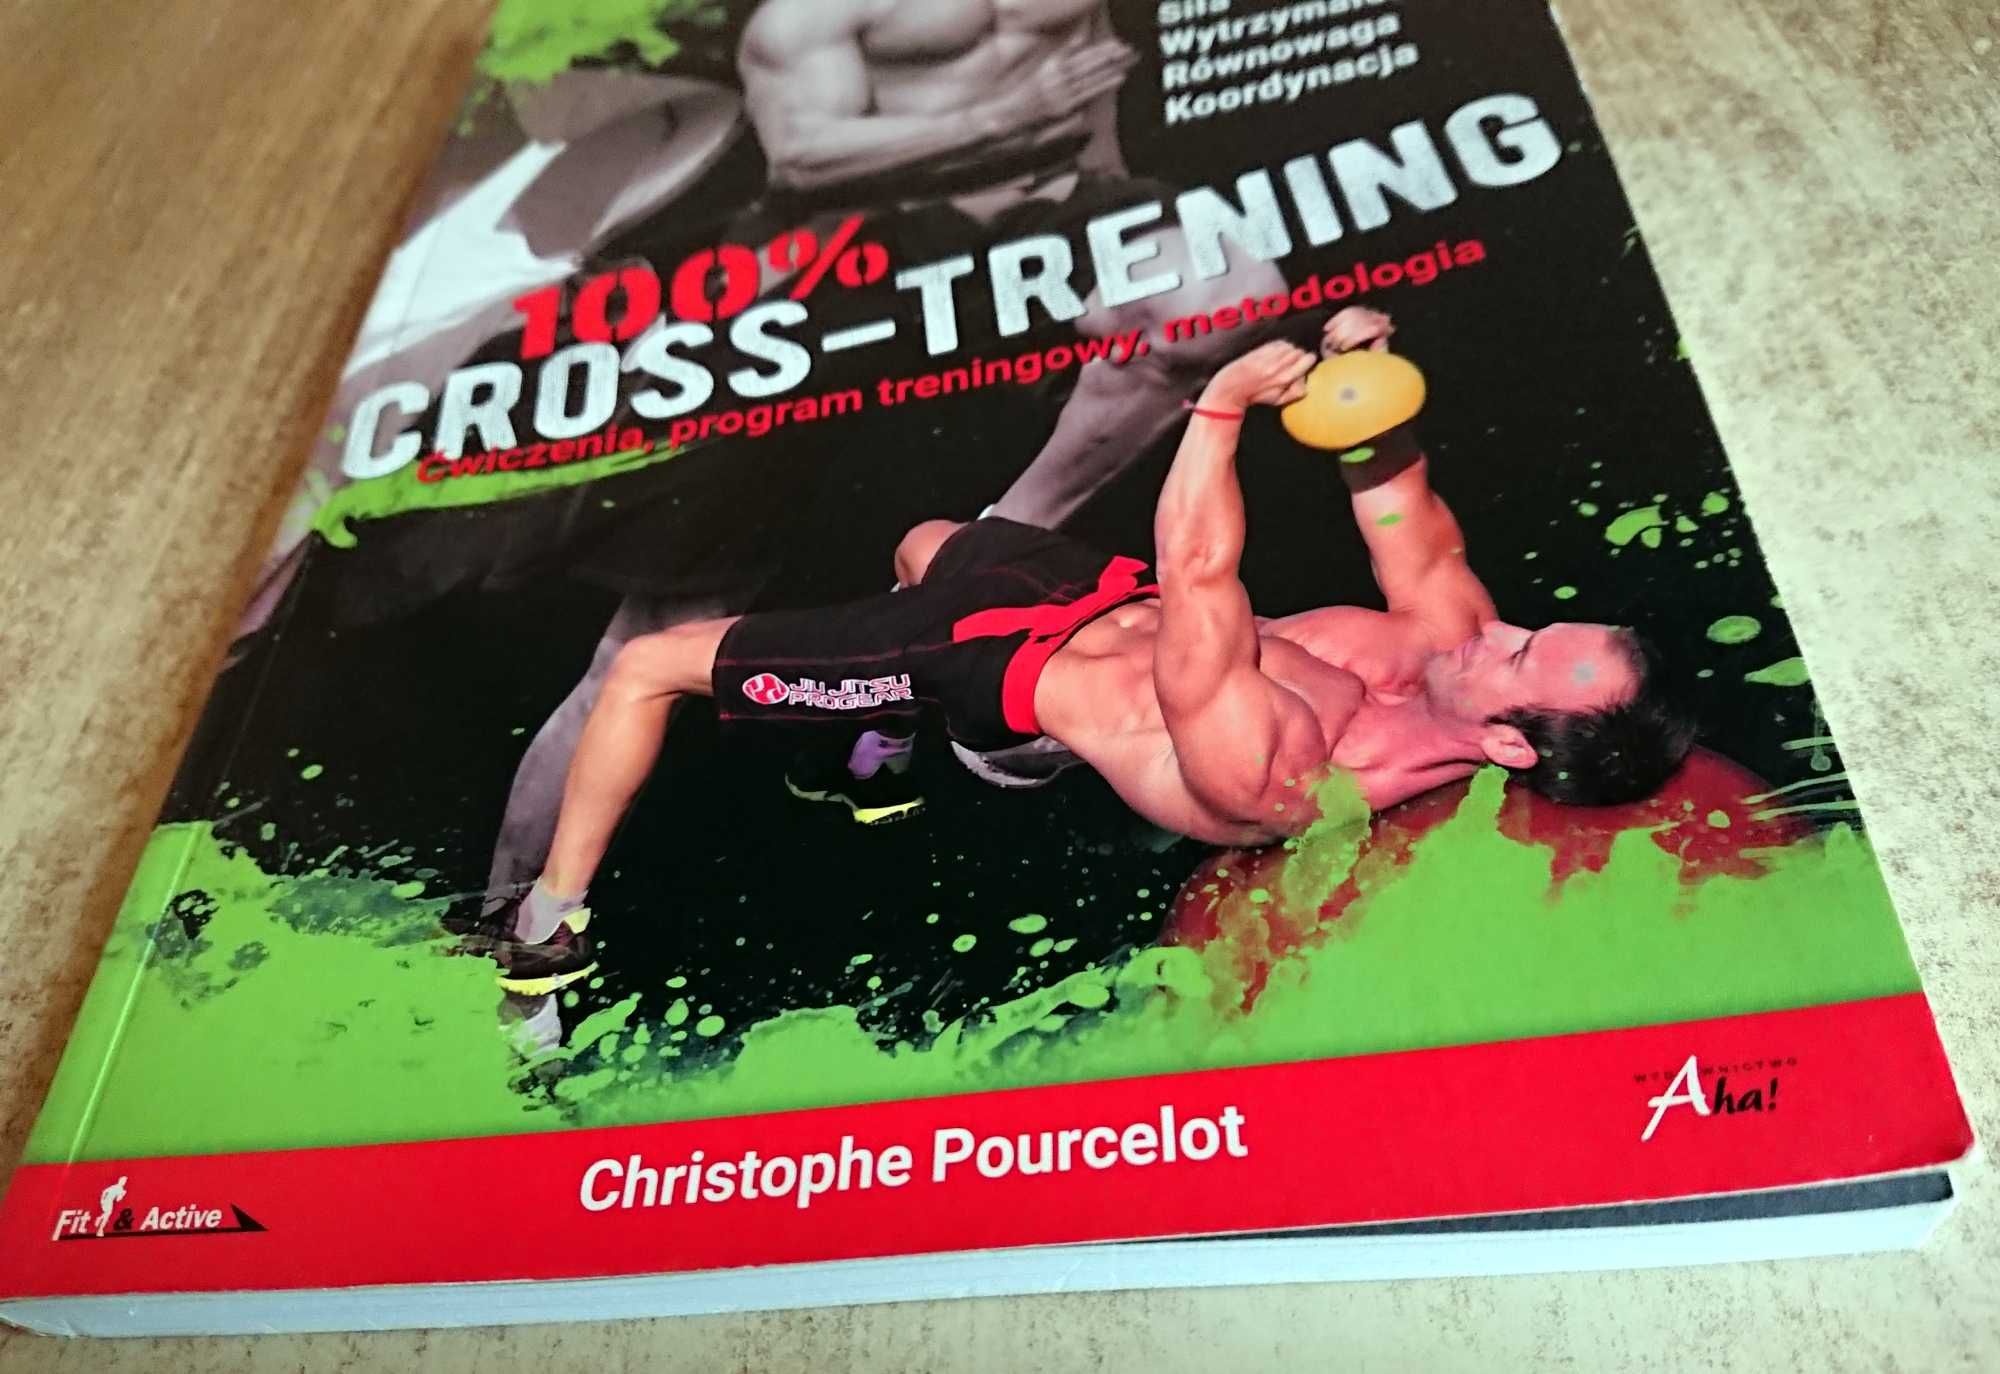 100% Cross-Trening. Ćwiczenia, program treningowy Christophe Pourcelot